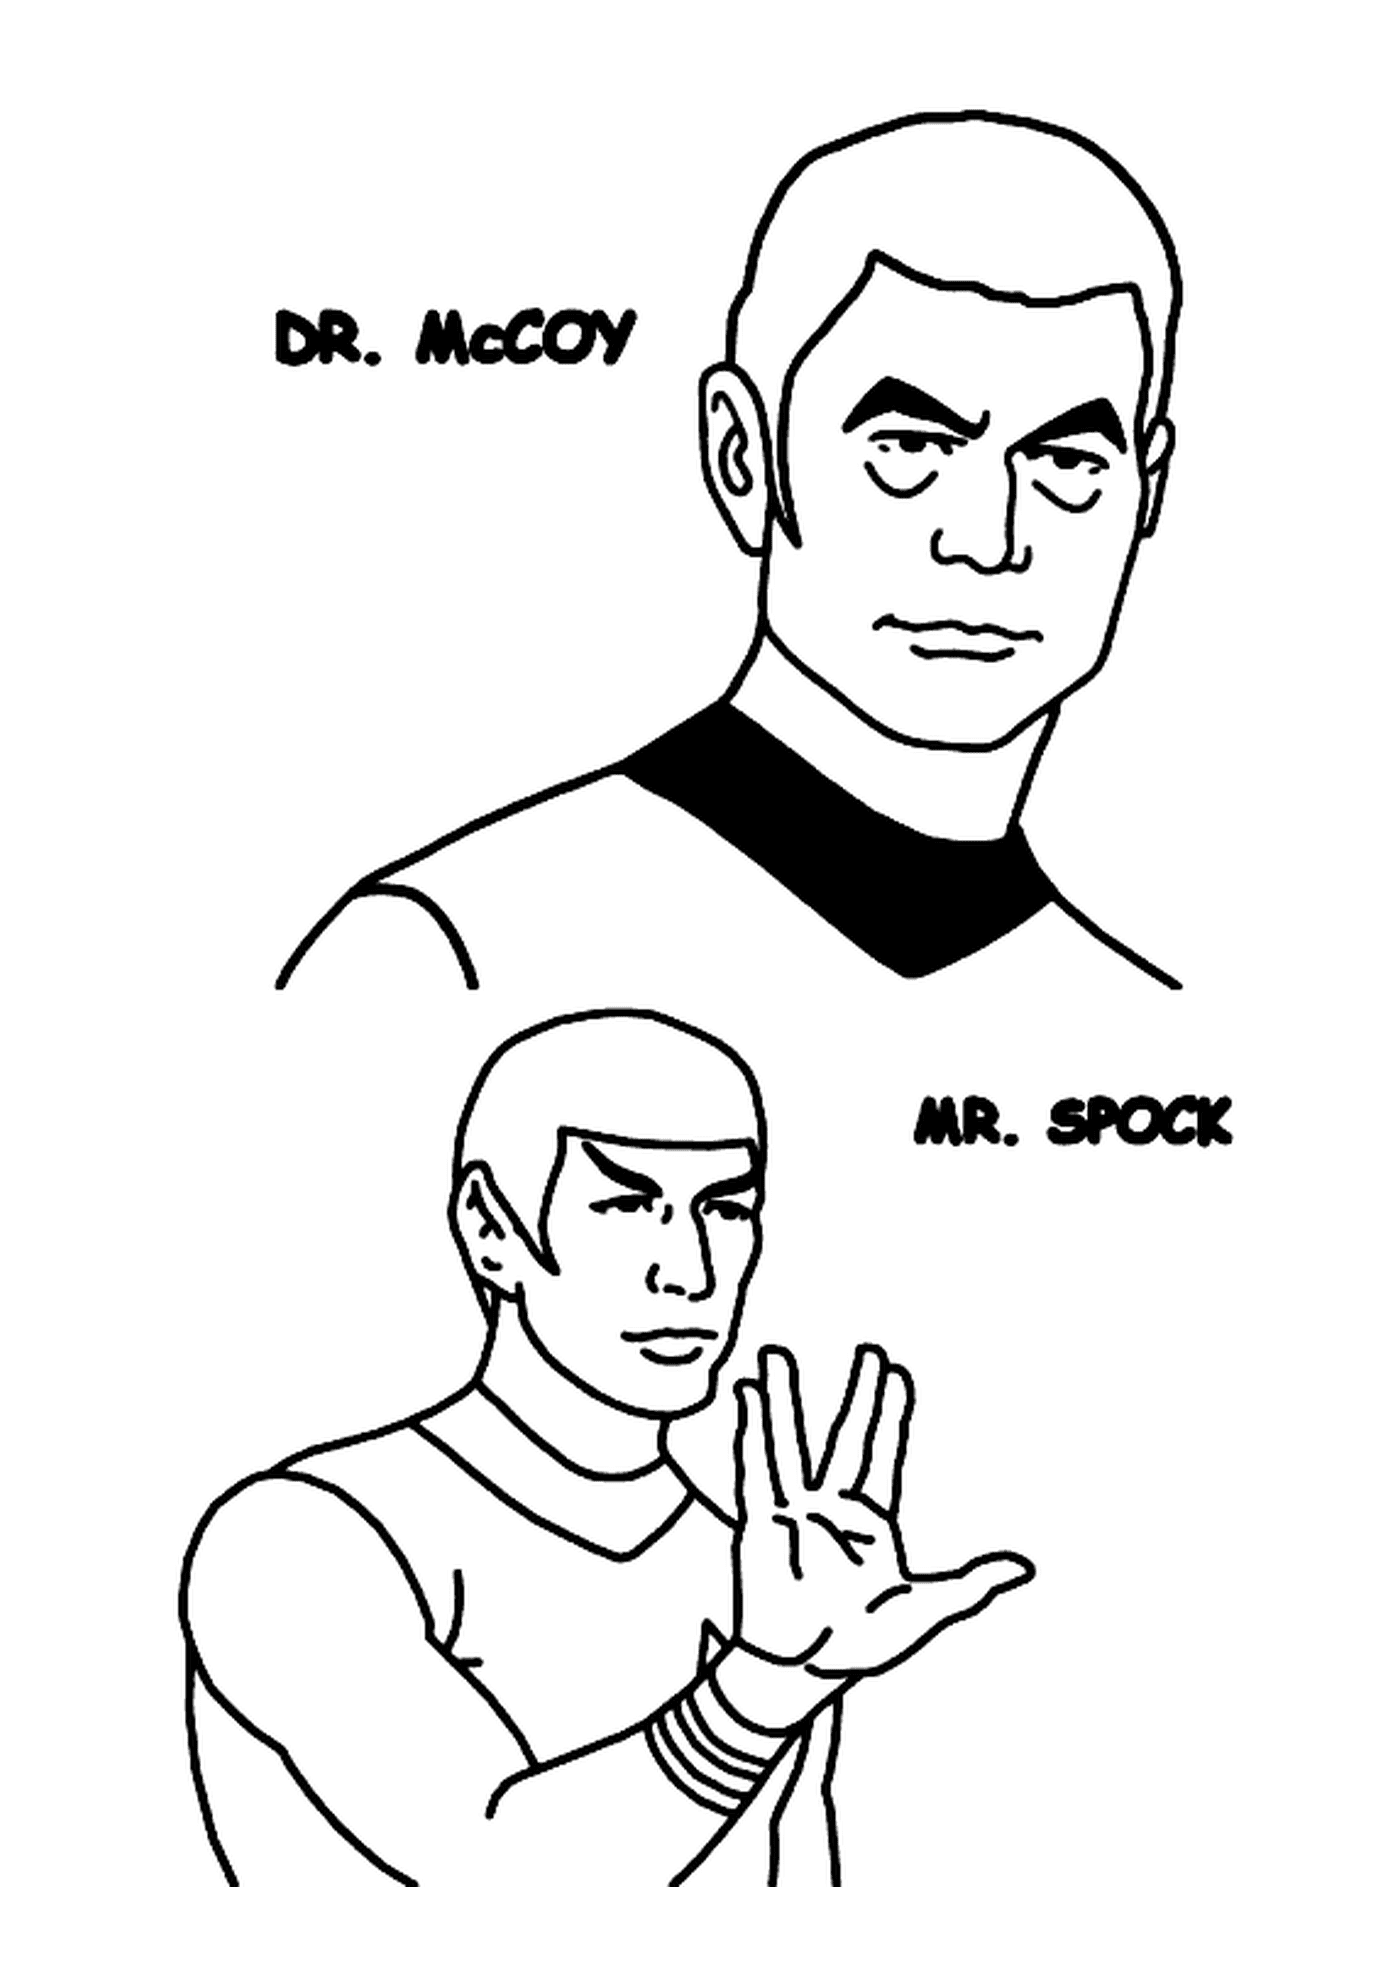  Dr McCoy e Mr Spock de Star Trek 